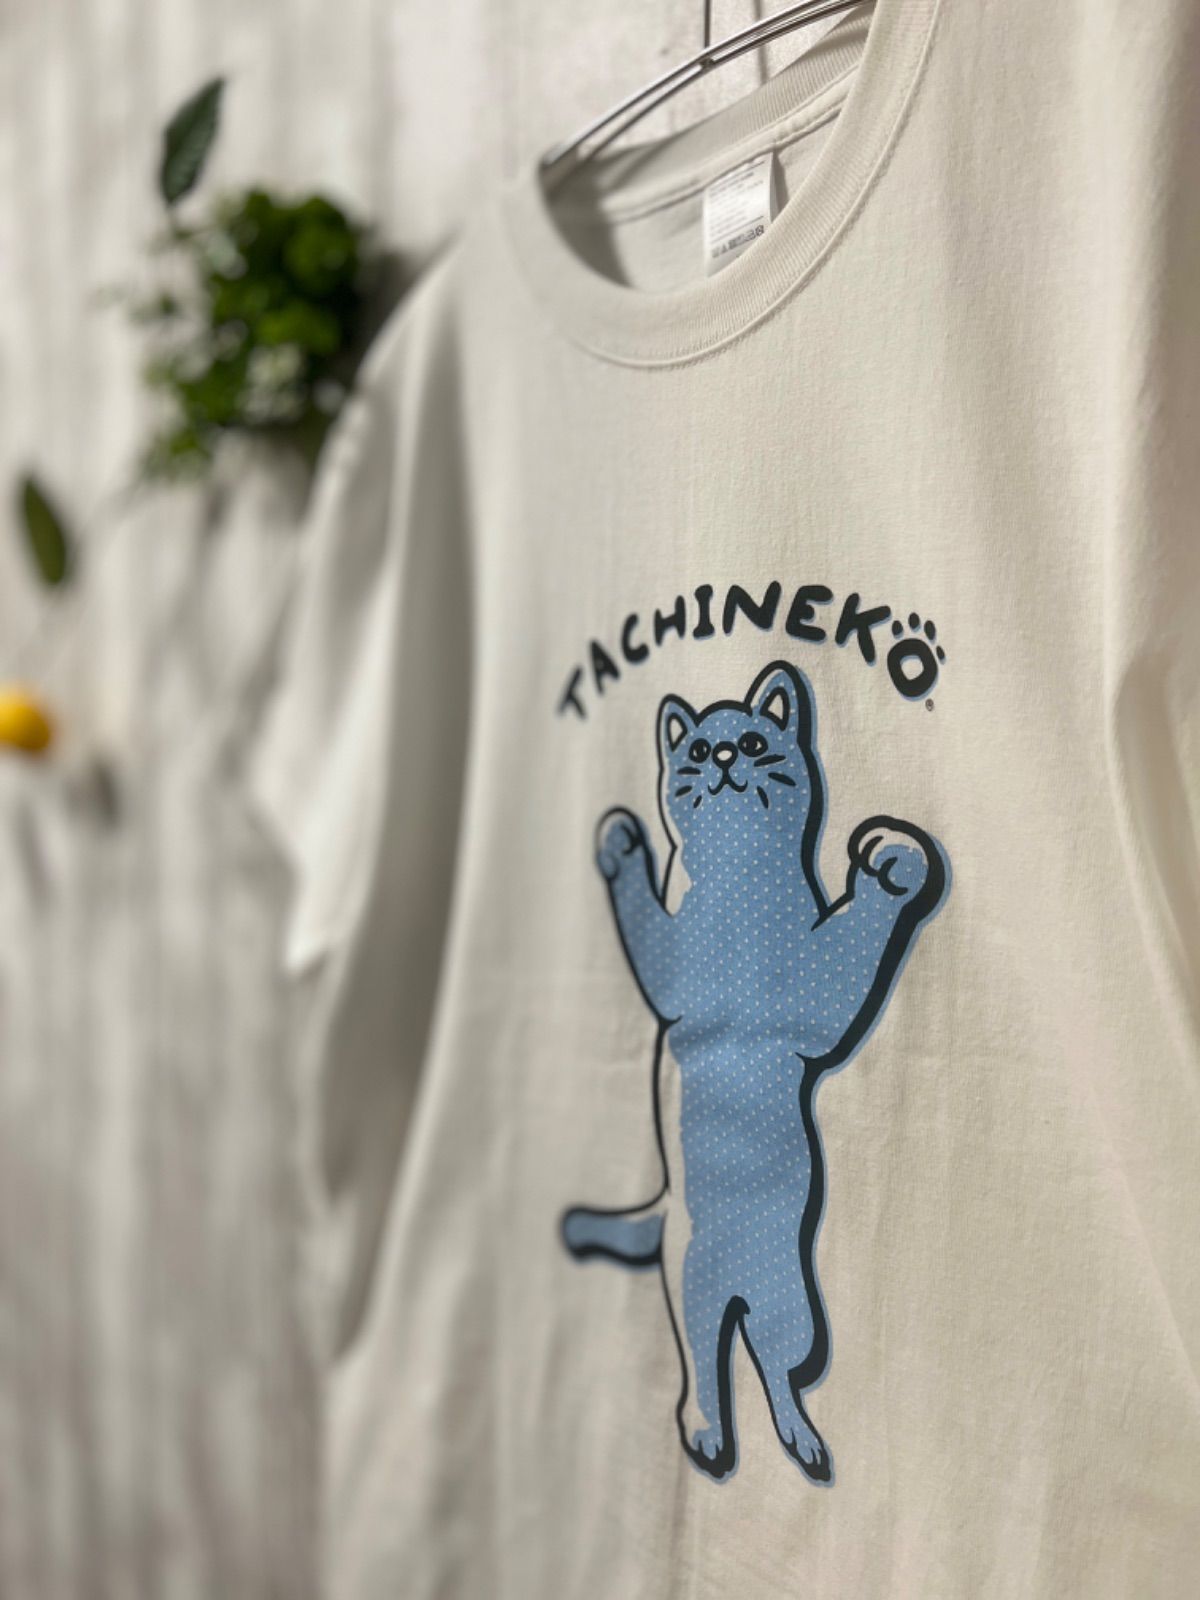 TACHINEKO 立ち猫Tshirt　Tシャツ-0